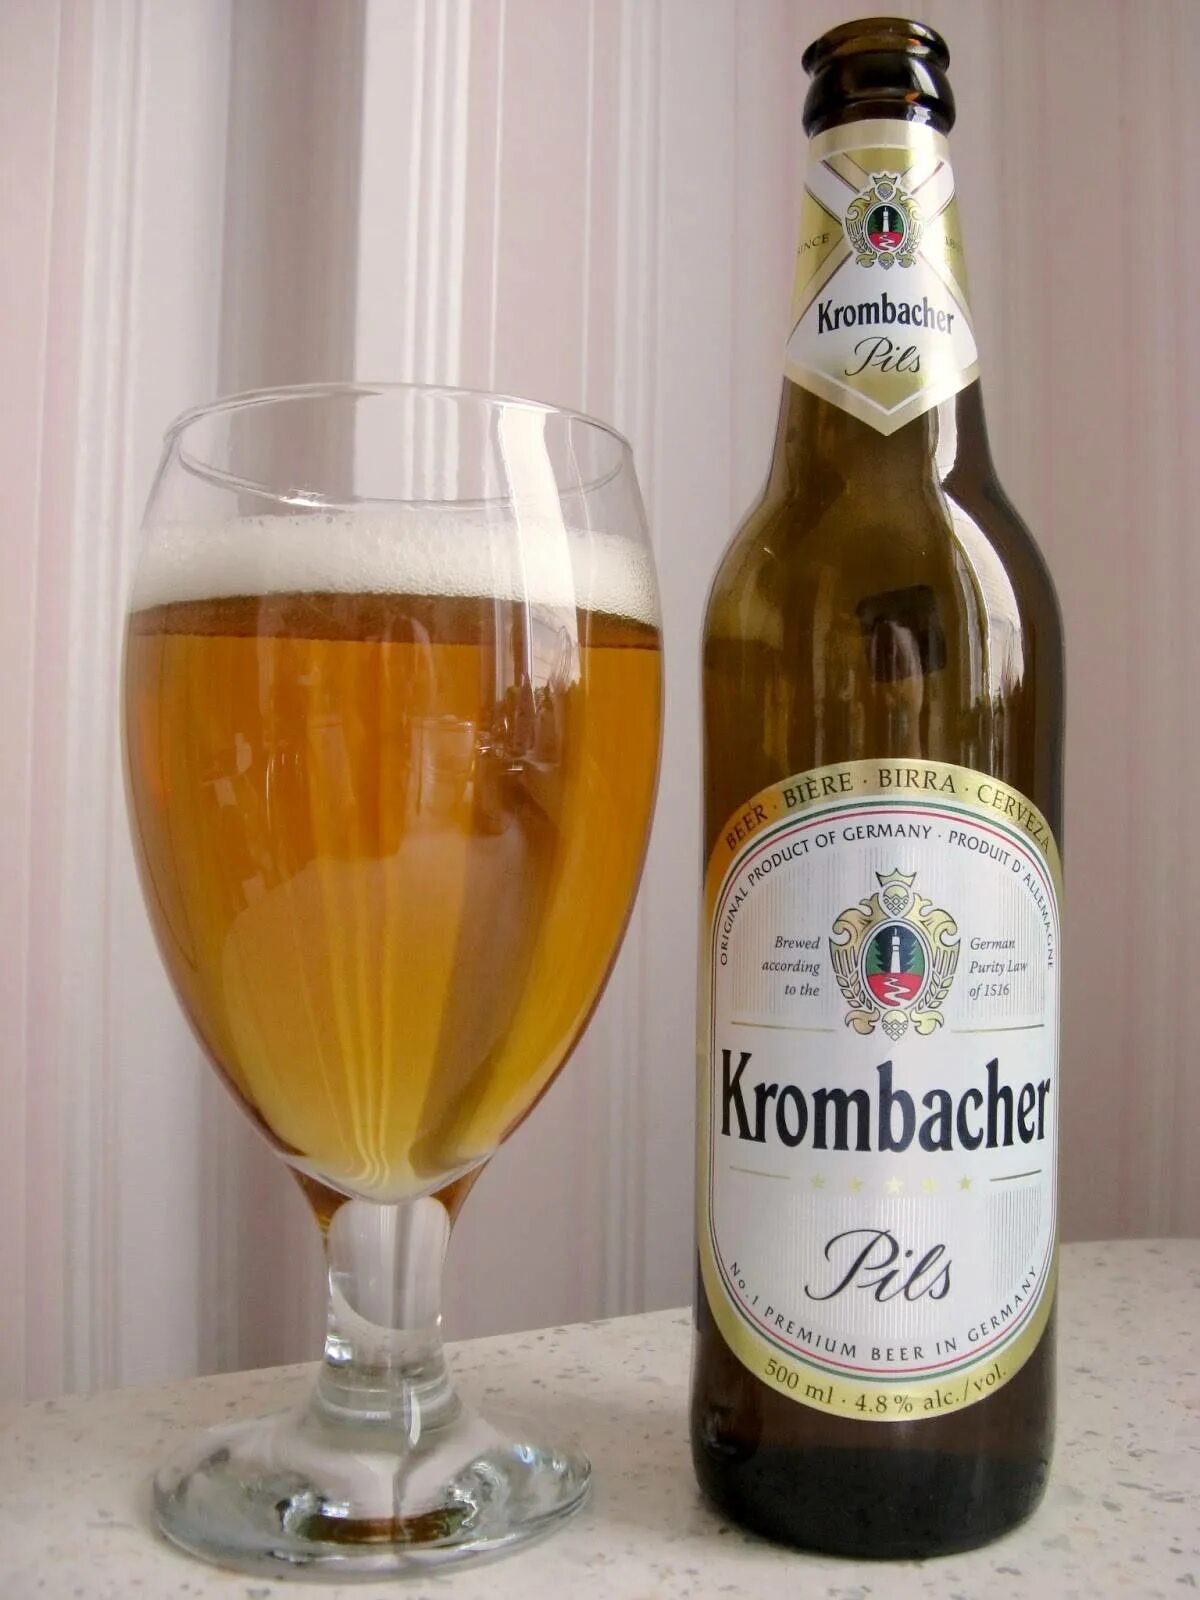 Krombacher beer